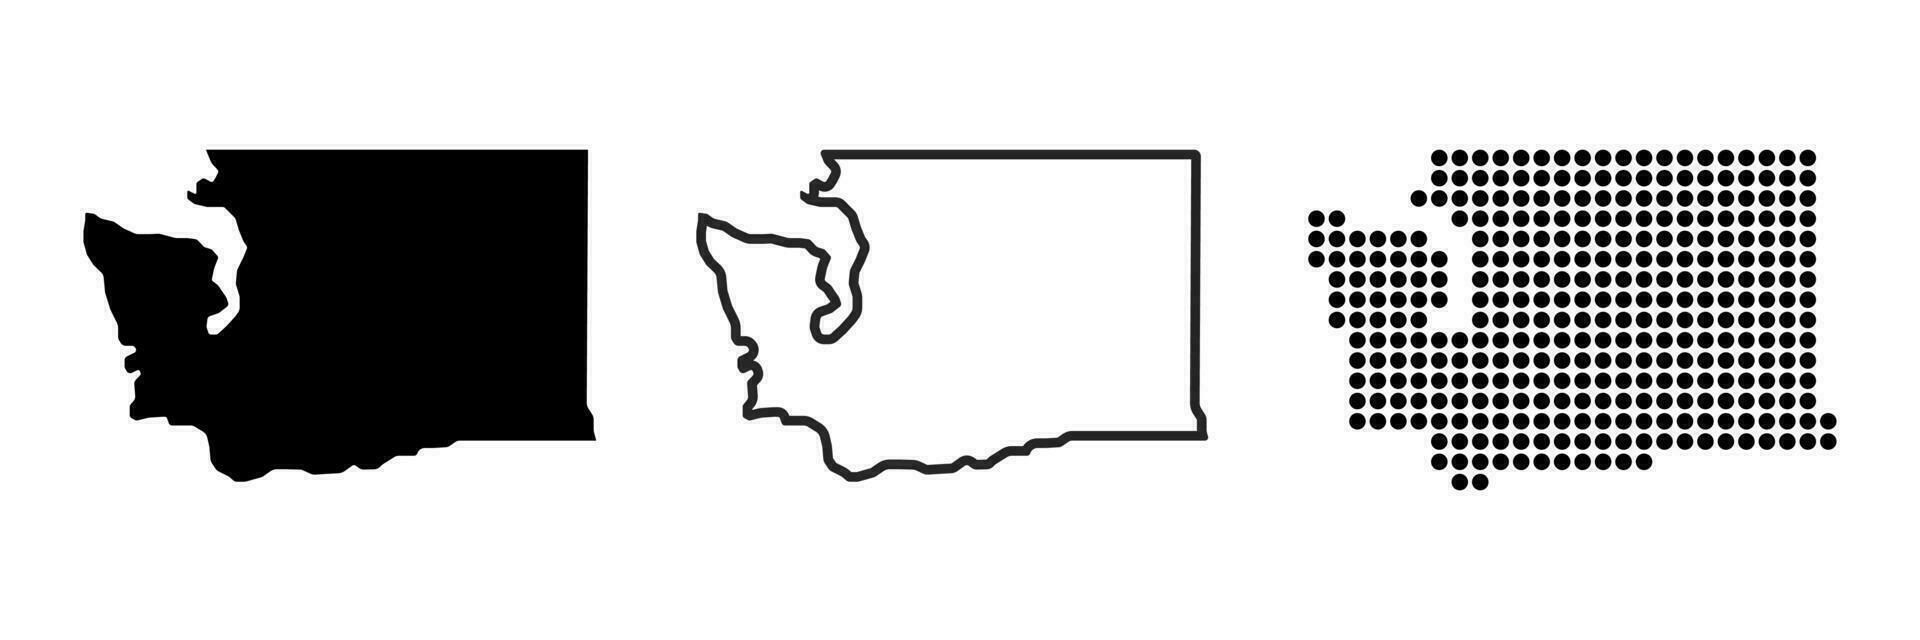 Washington estado mapa contorno. Washington estado mapa. glifo y contorno Washington mapa. nosotros estado mapa. vector